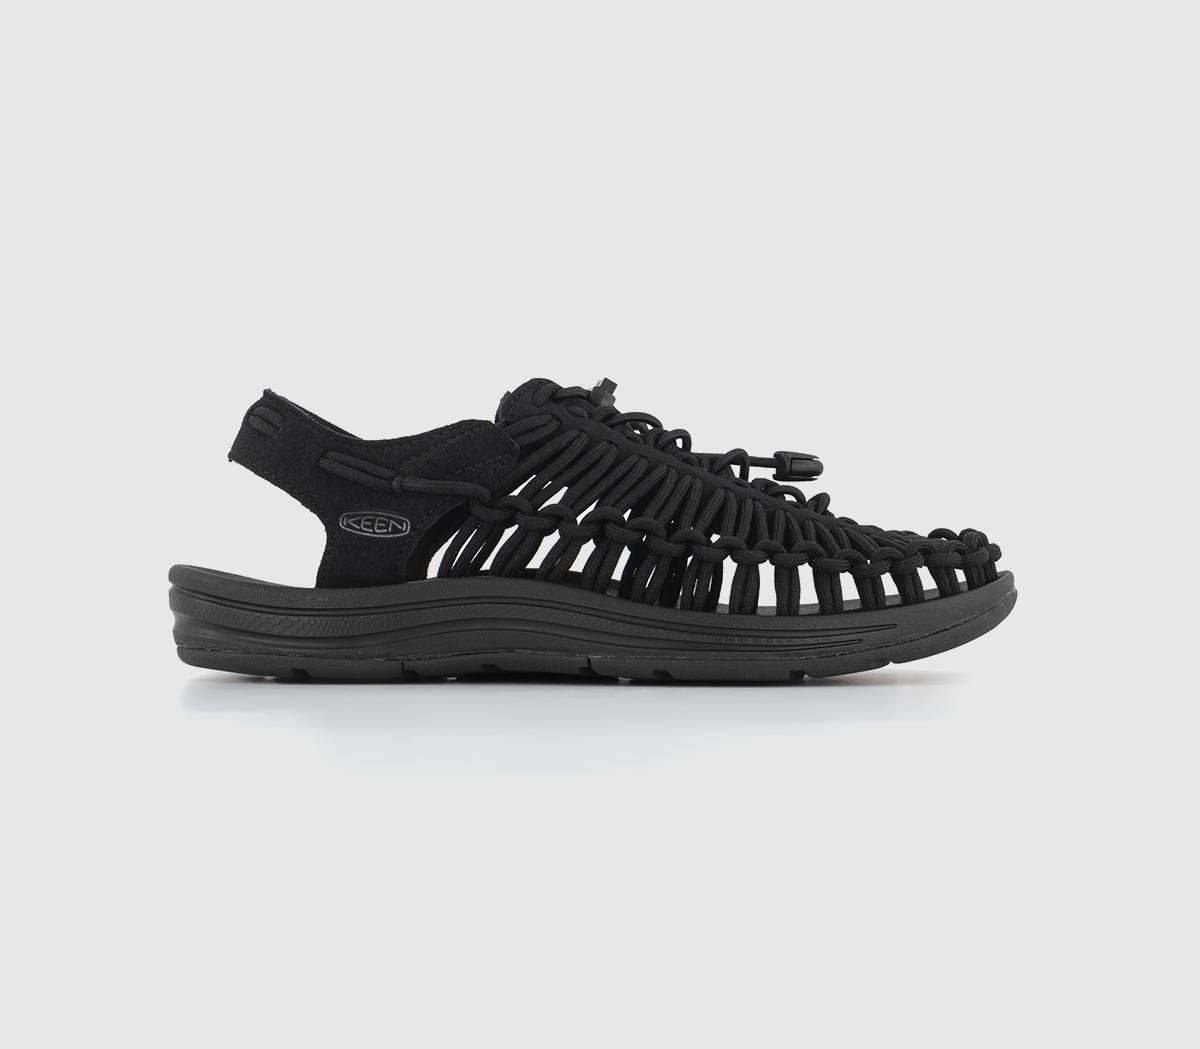 KEEN Uneek Sandals Black - Men's Sandals